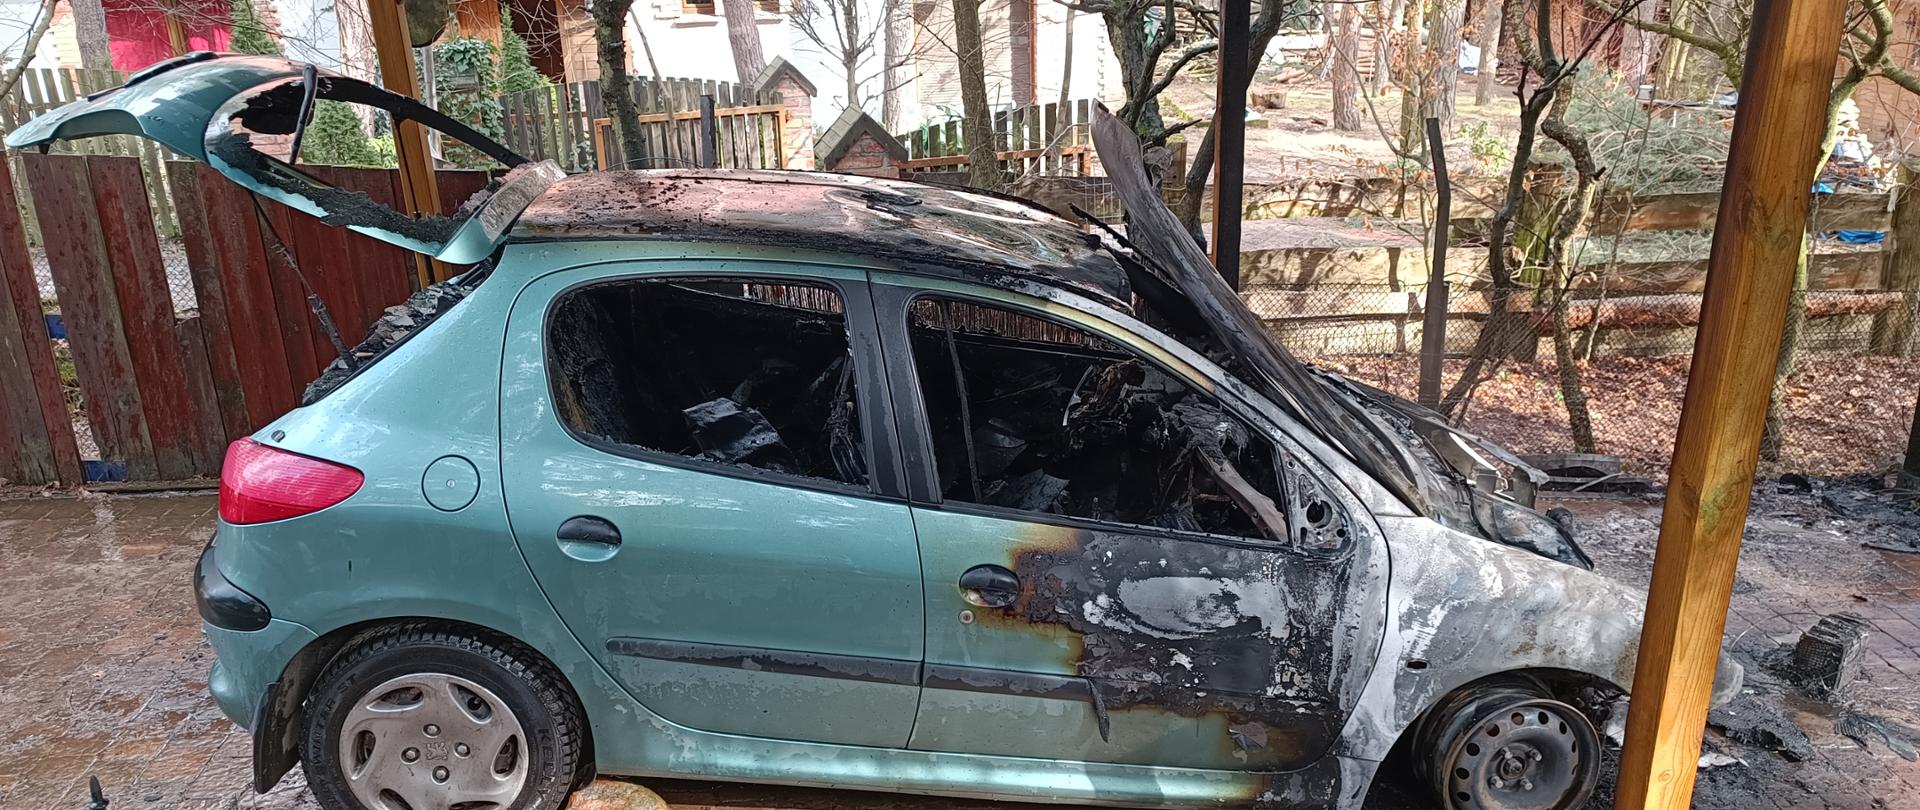 Widok auta zniszczonego przez pożar